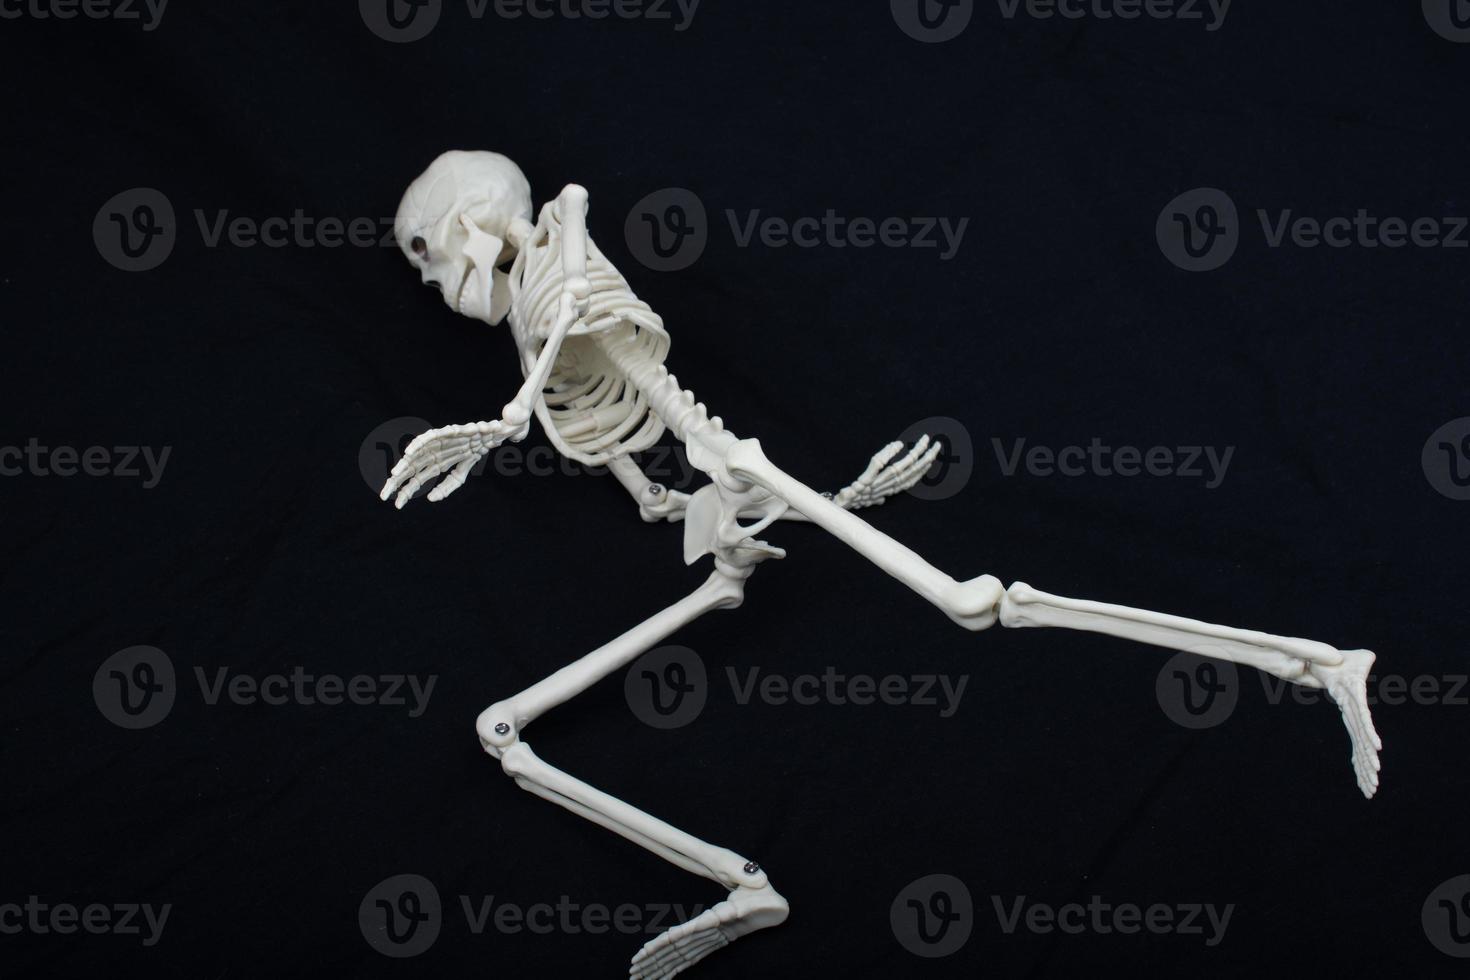 umano scheletro modello in posa per medico anatomia scienza foto